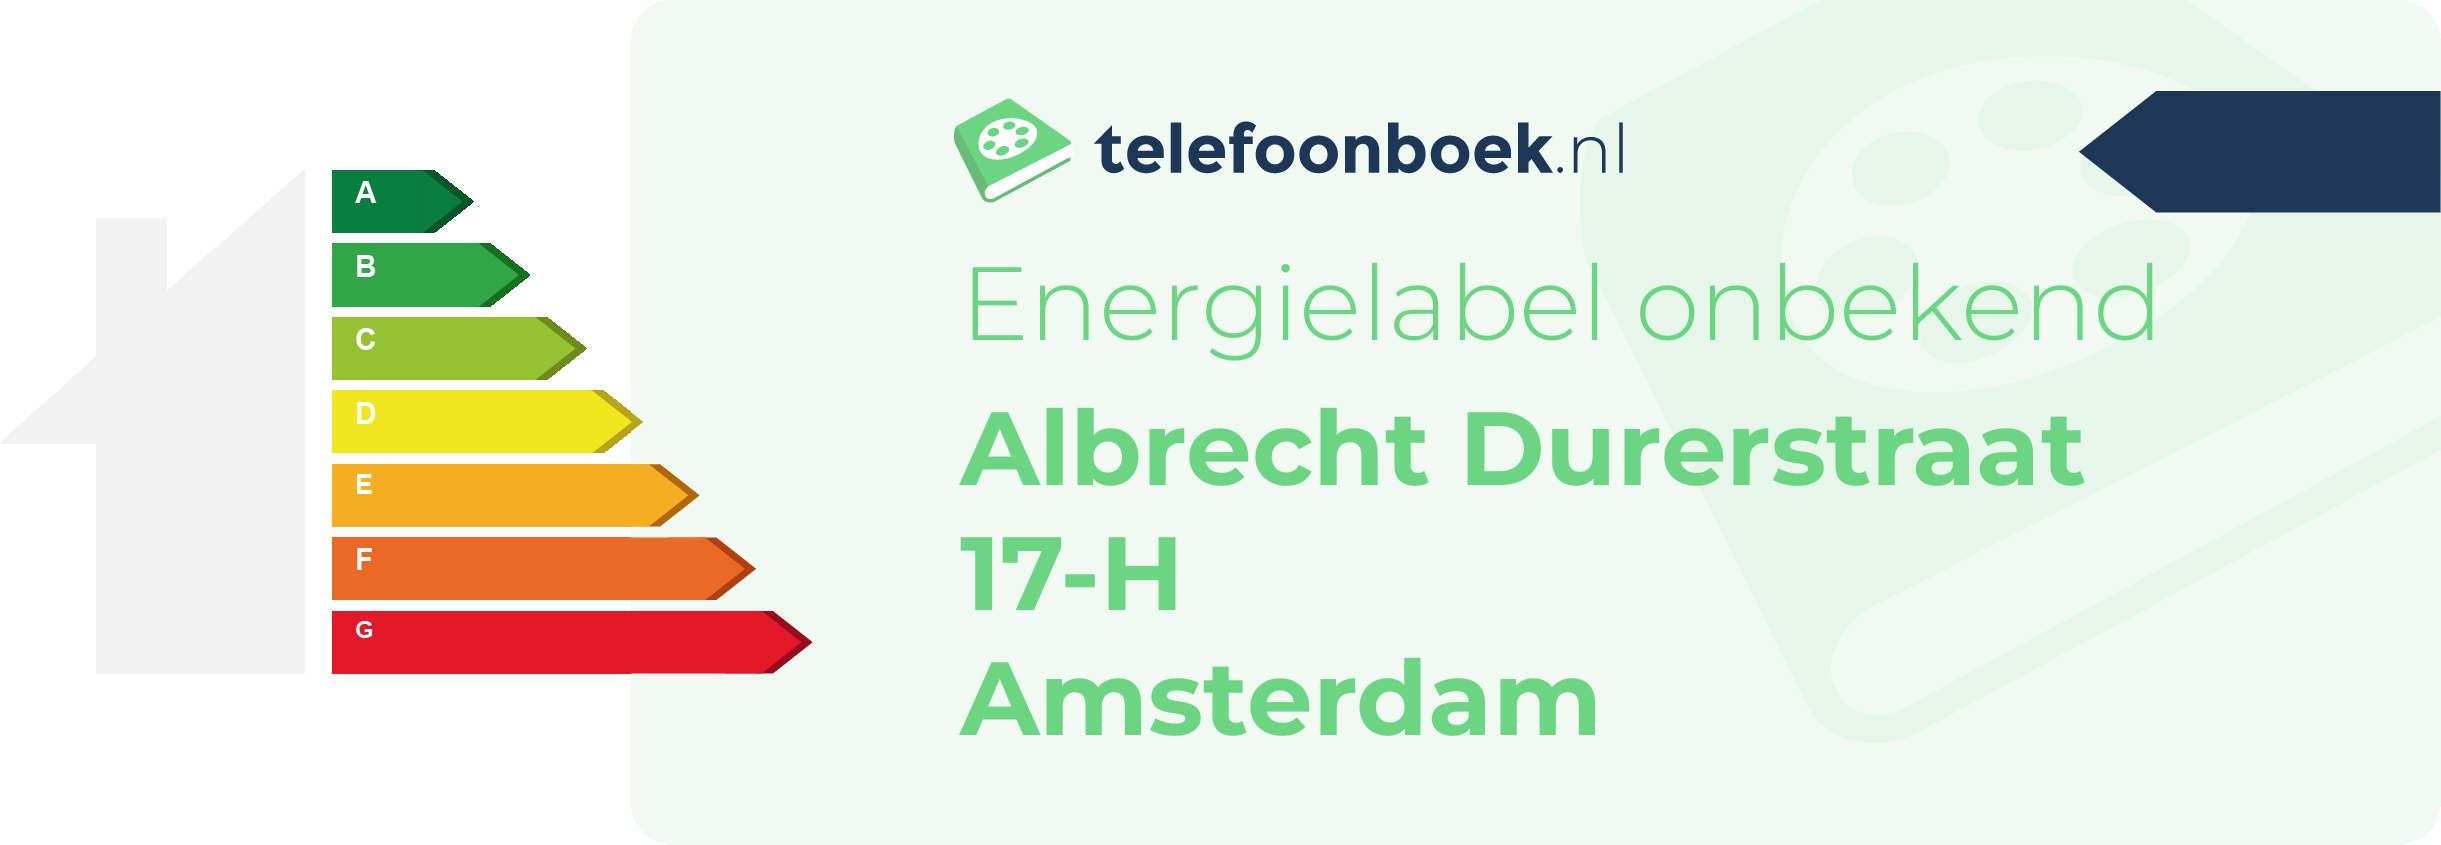 Energielabel Albrecht Durerstraat 17-H Amsterdam